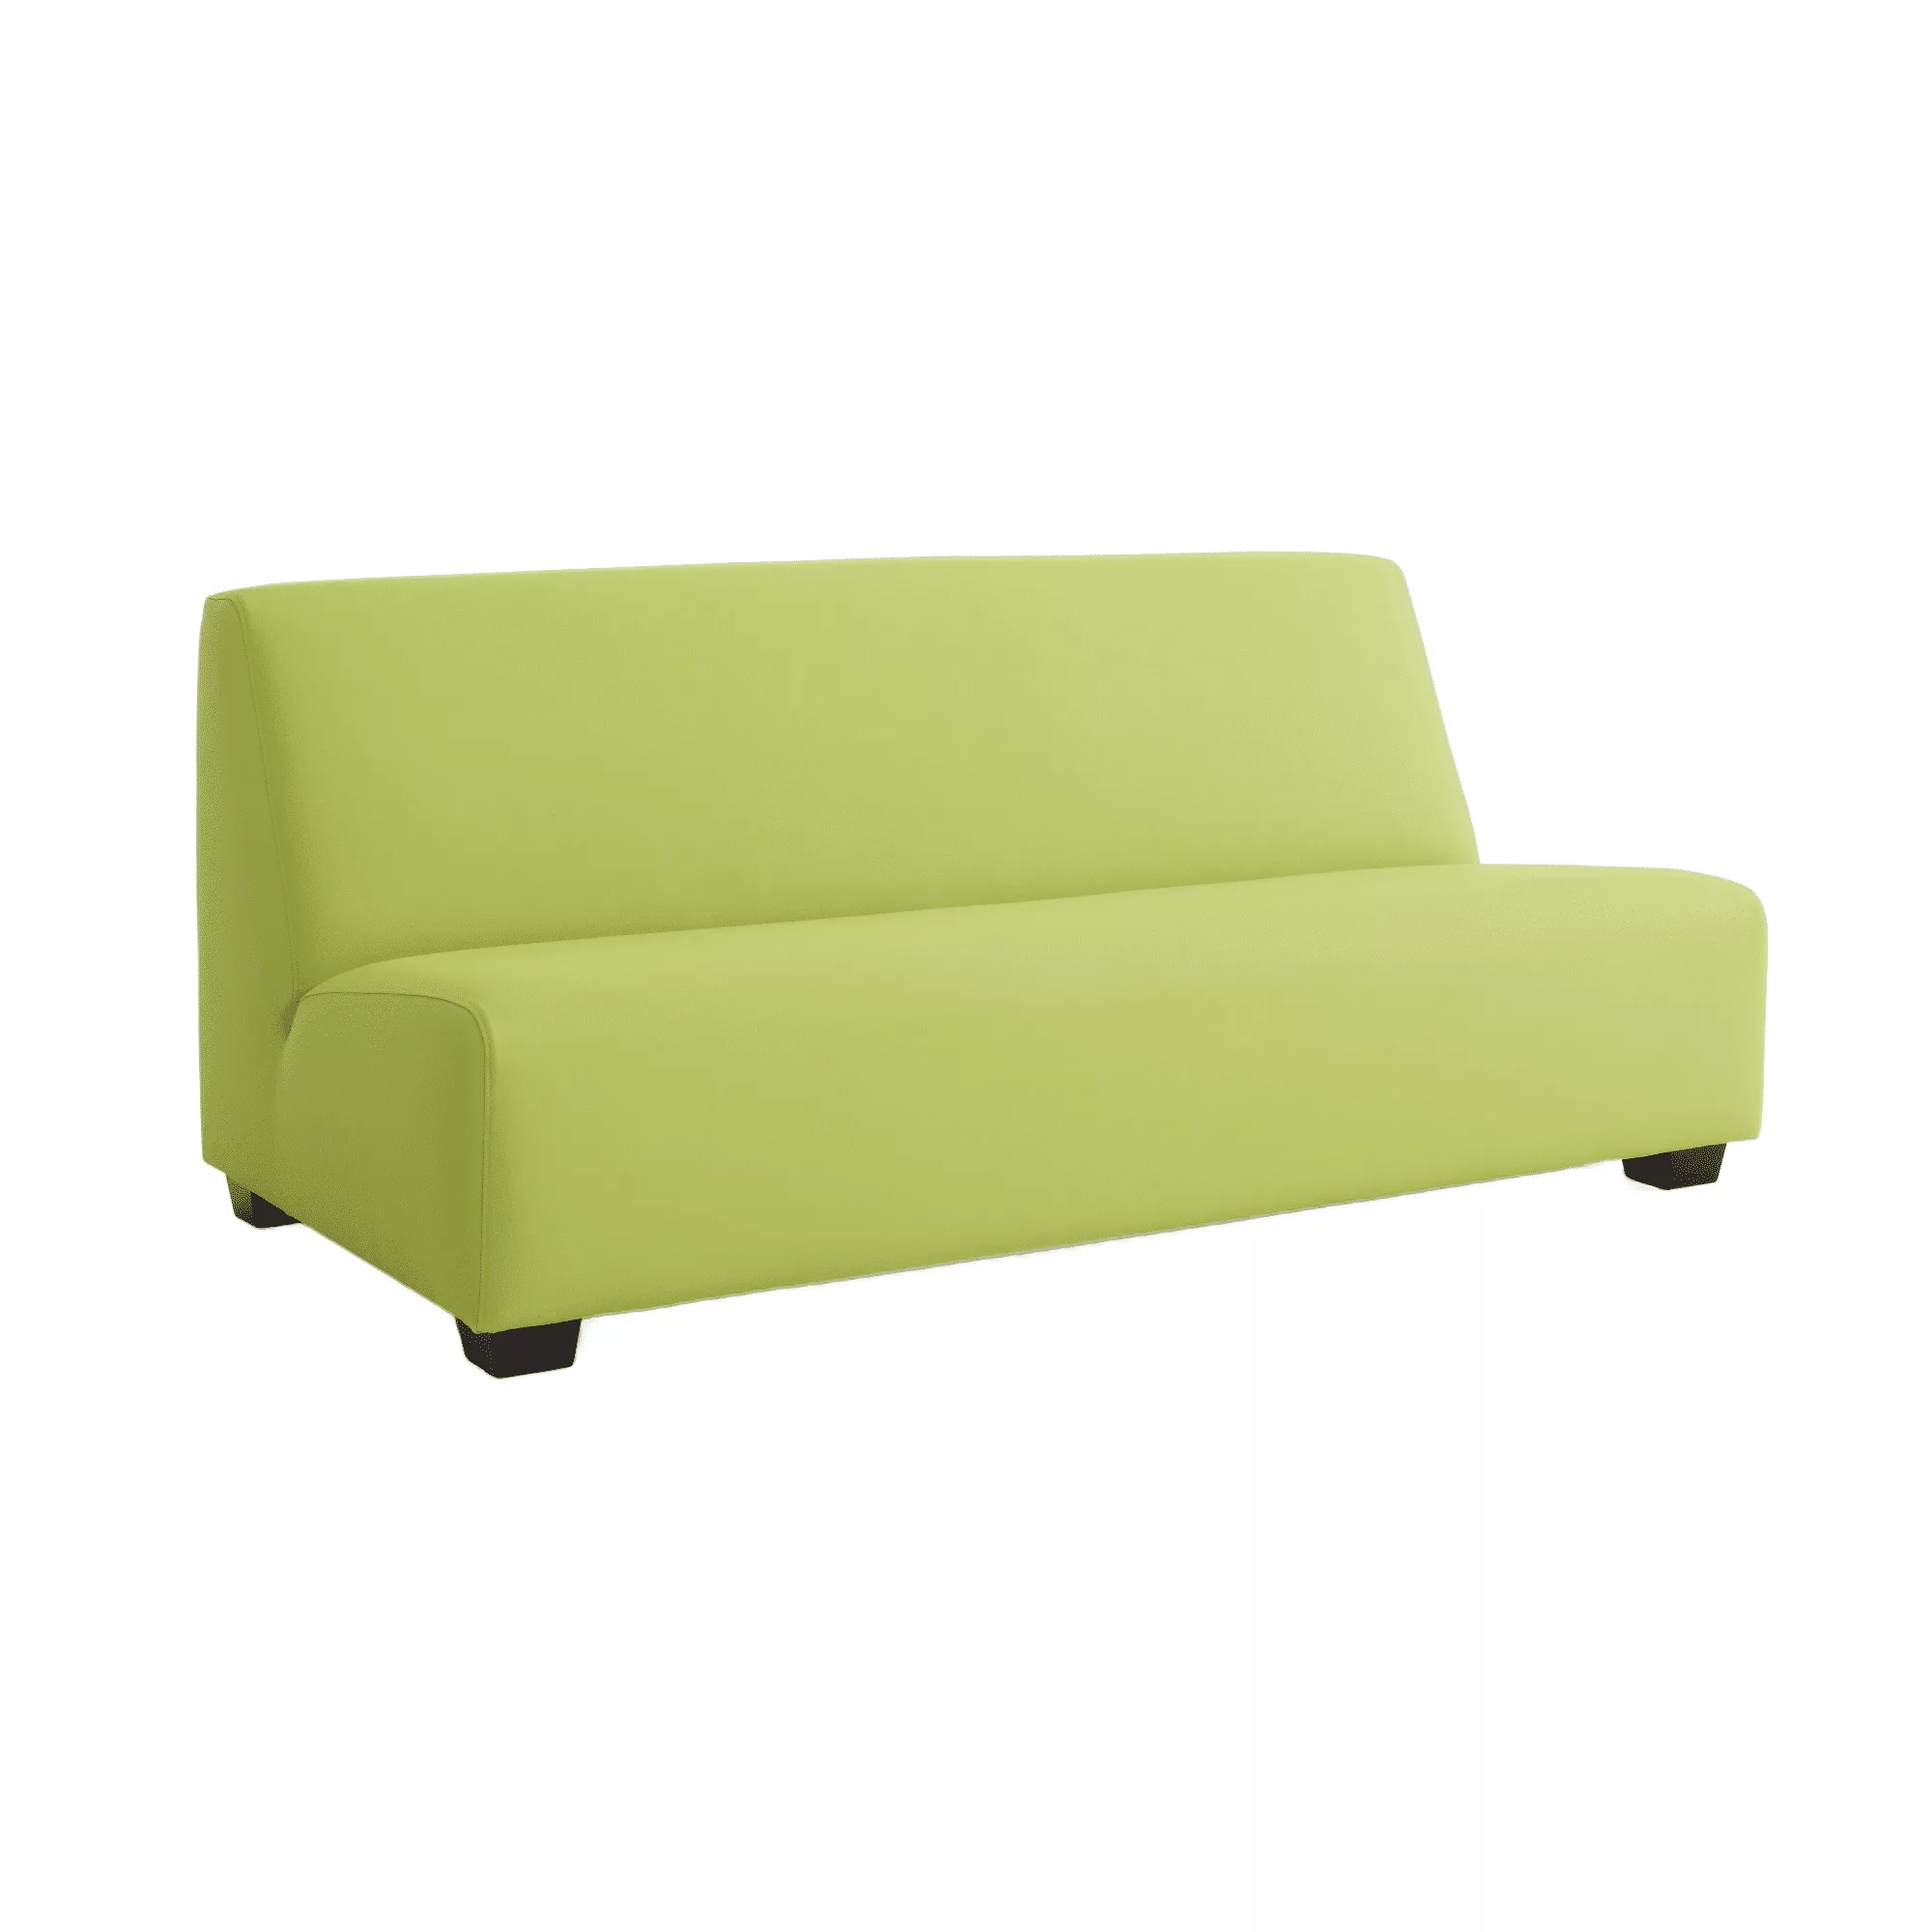 Groene loungebank zonder armleuningen met kunststof meubelpoten.